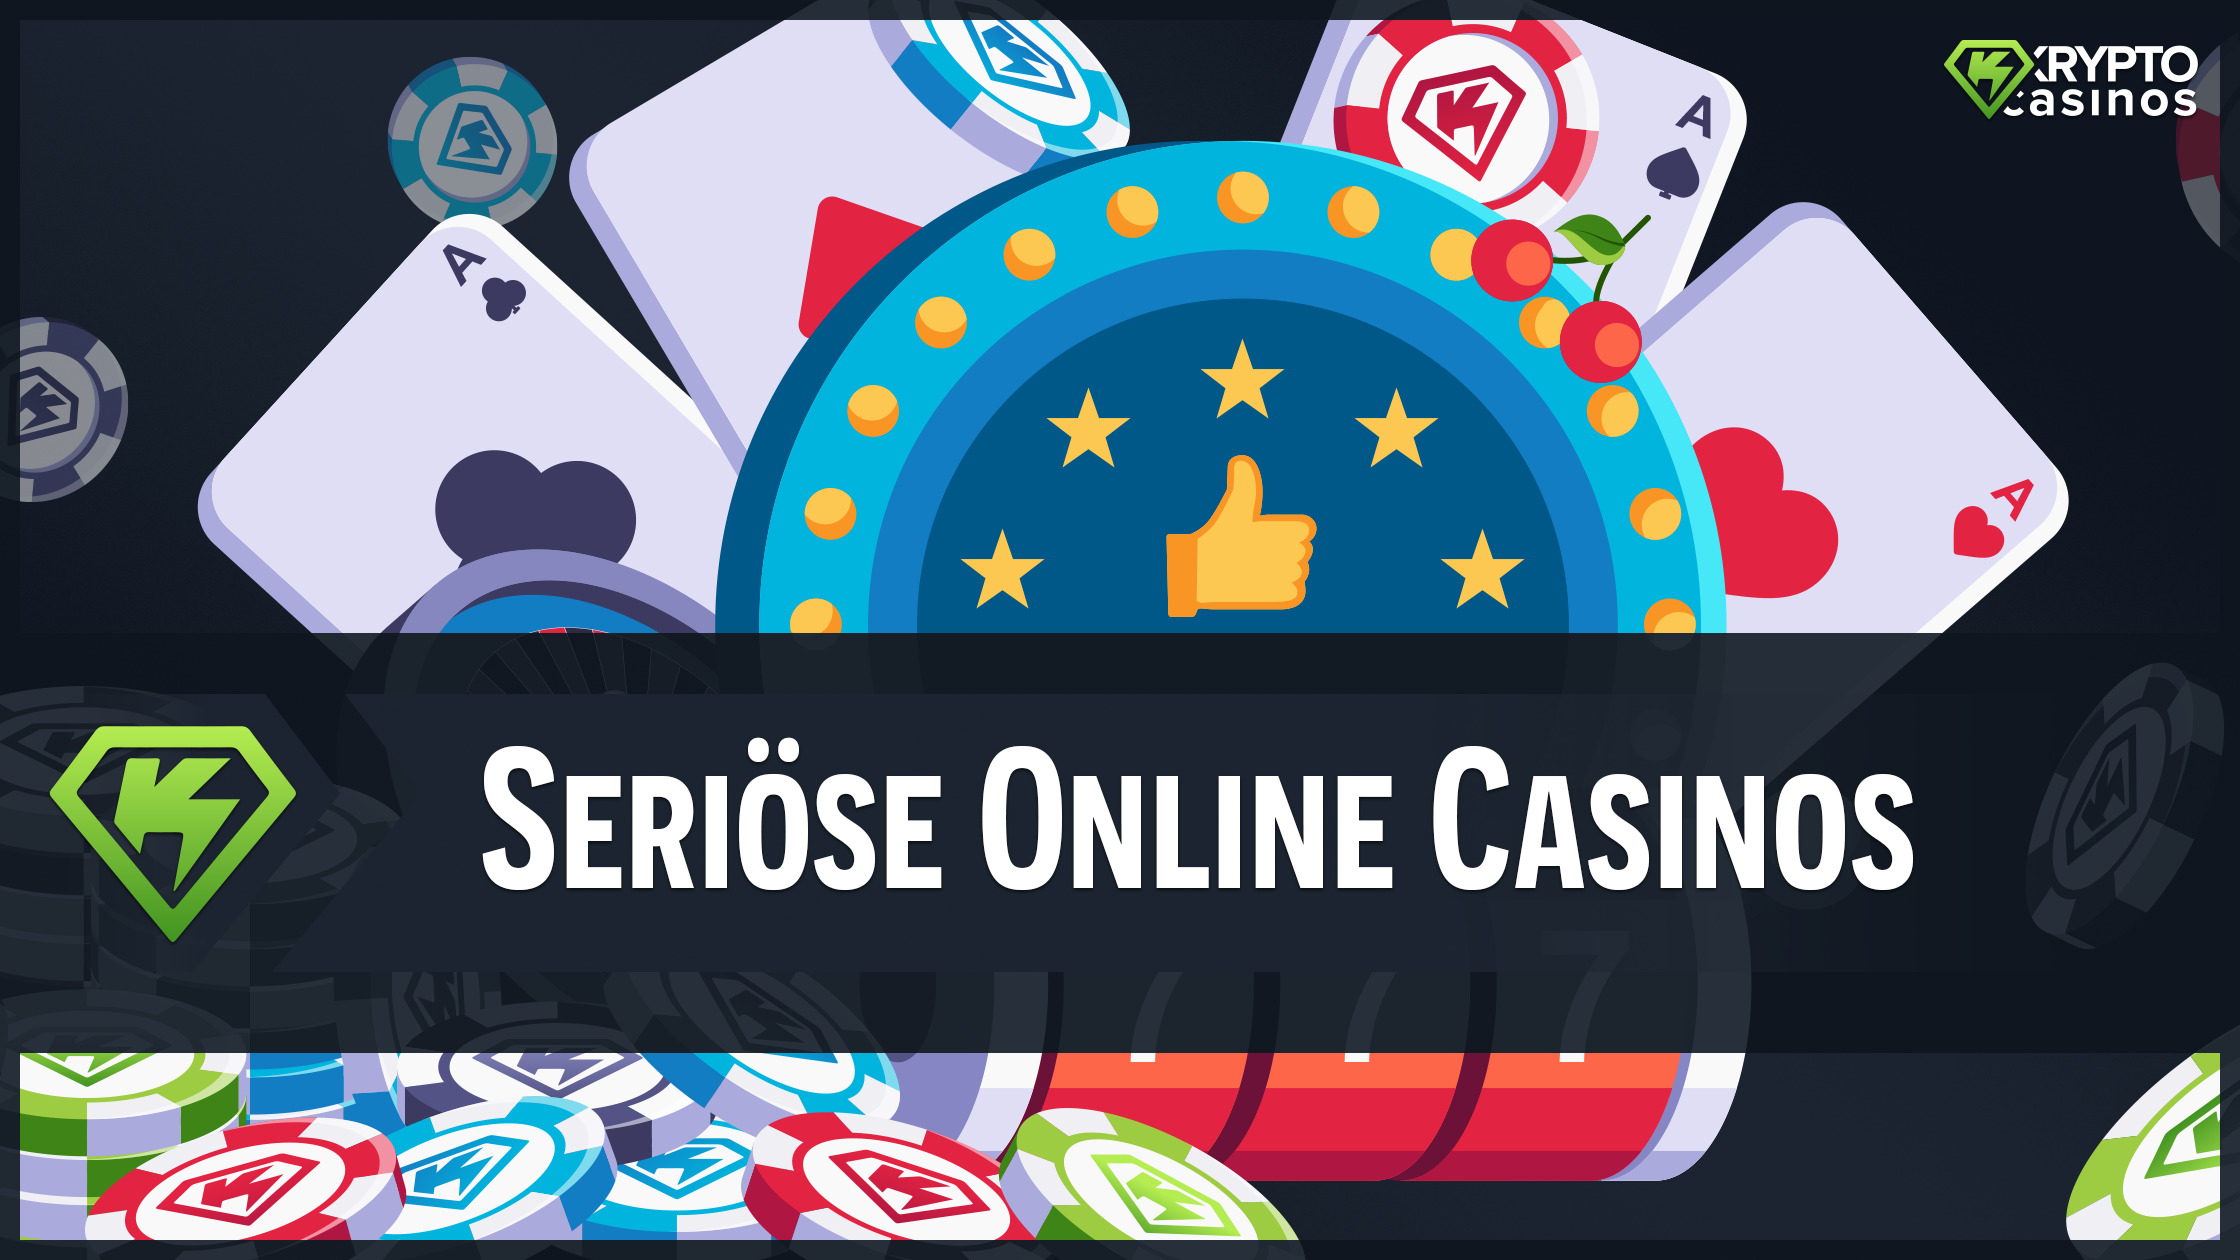 Die größte Lüge in Online Casino seriös